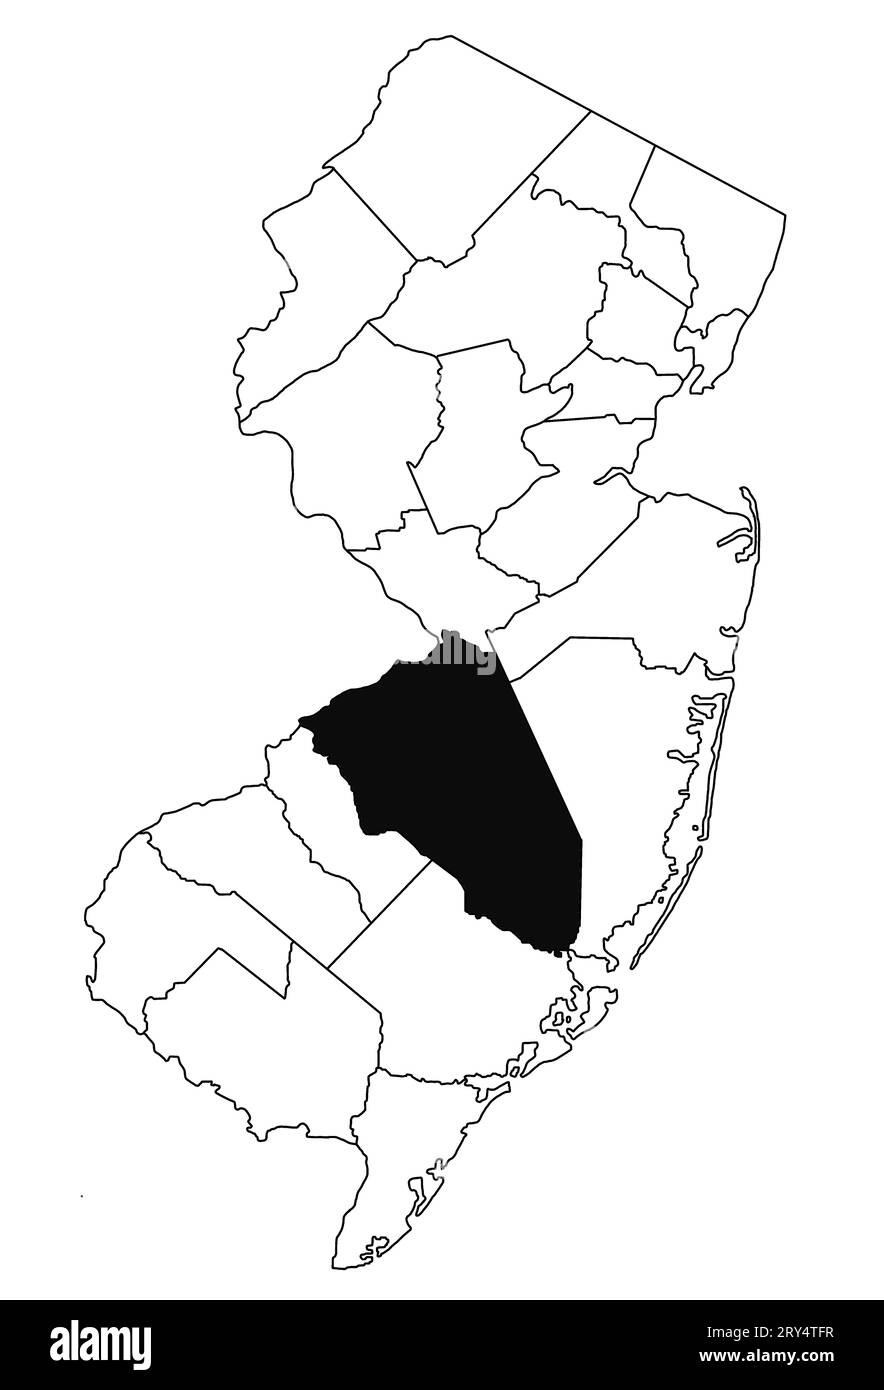 Mapa del condado de Burlington en el estado de Nueva Jersey sobre fondo blanco. Mapa de Condado único resaltado por color negro en el mapa de jersey nuevo. Foto de stock